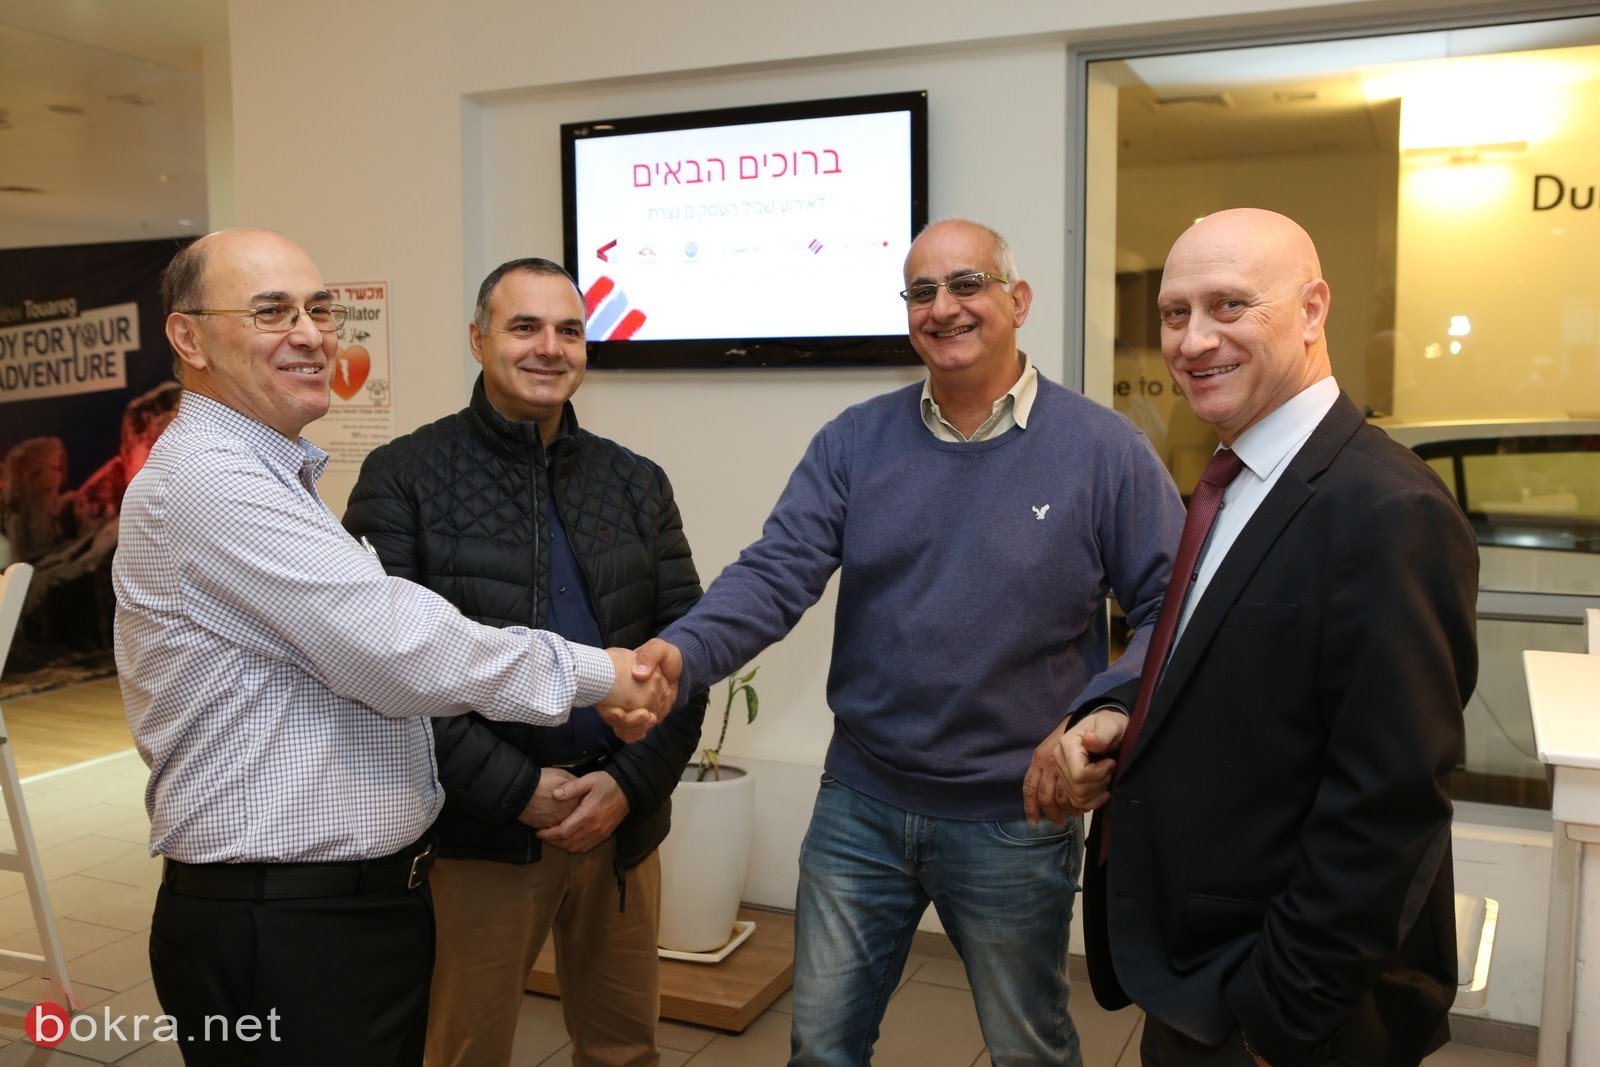 الناصرة: عشرات رجال الاعمال يشاركون في افتتاح برنامج برنامج بنك هبوعليم "مسار الأعمال في البلاد"-11